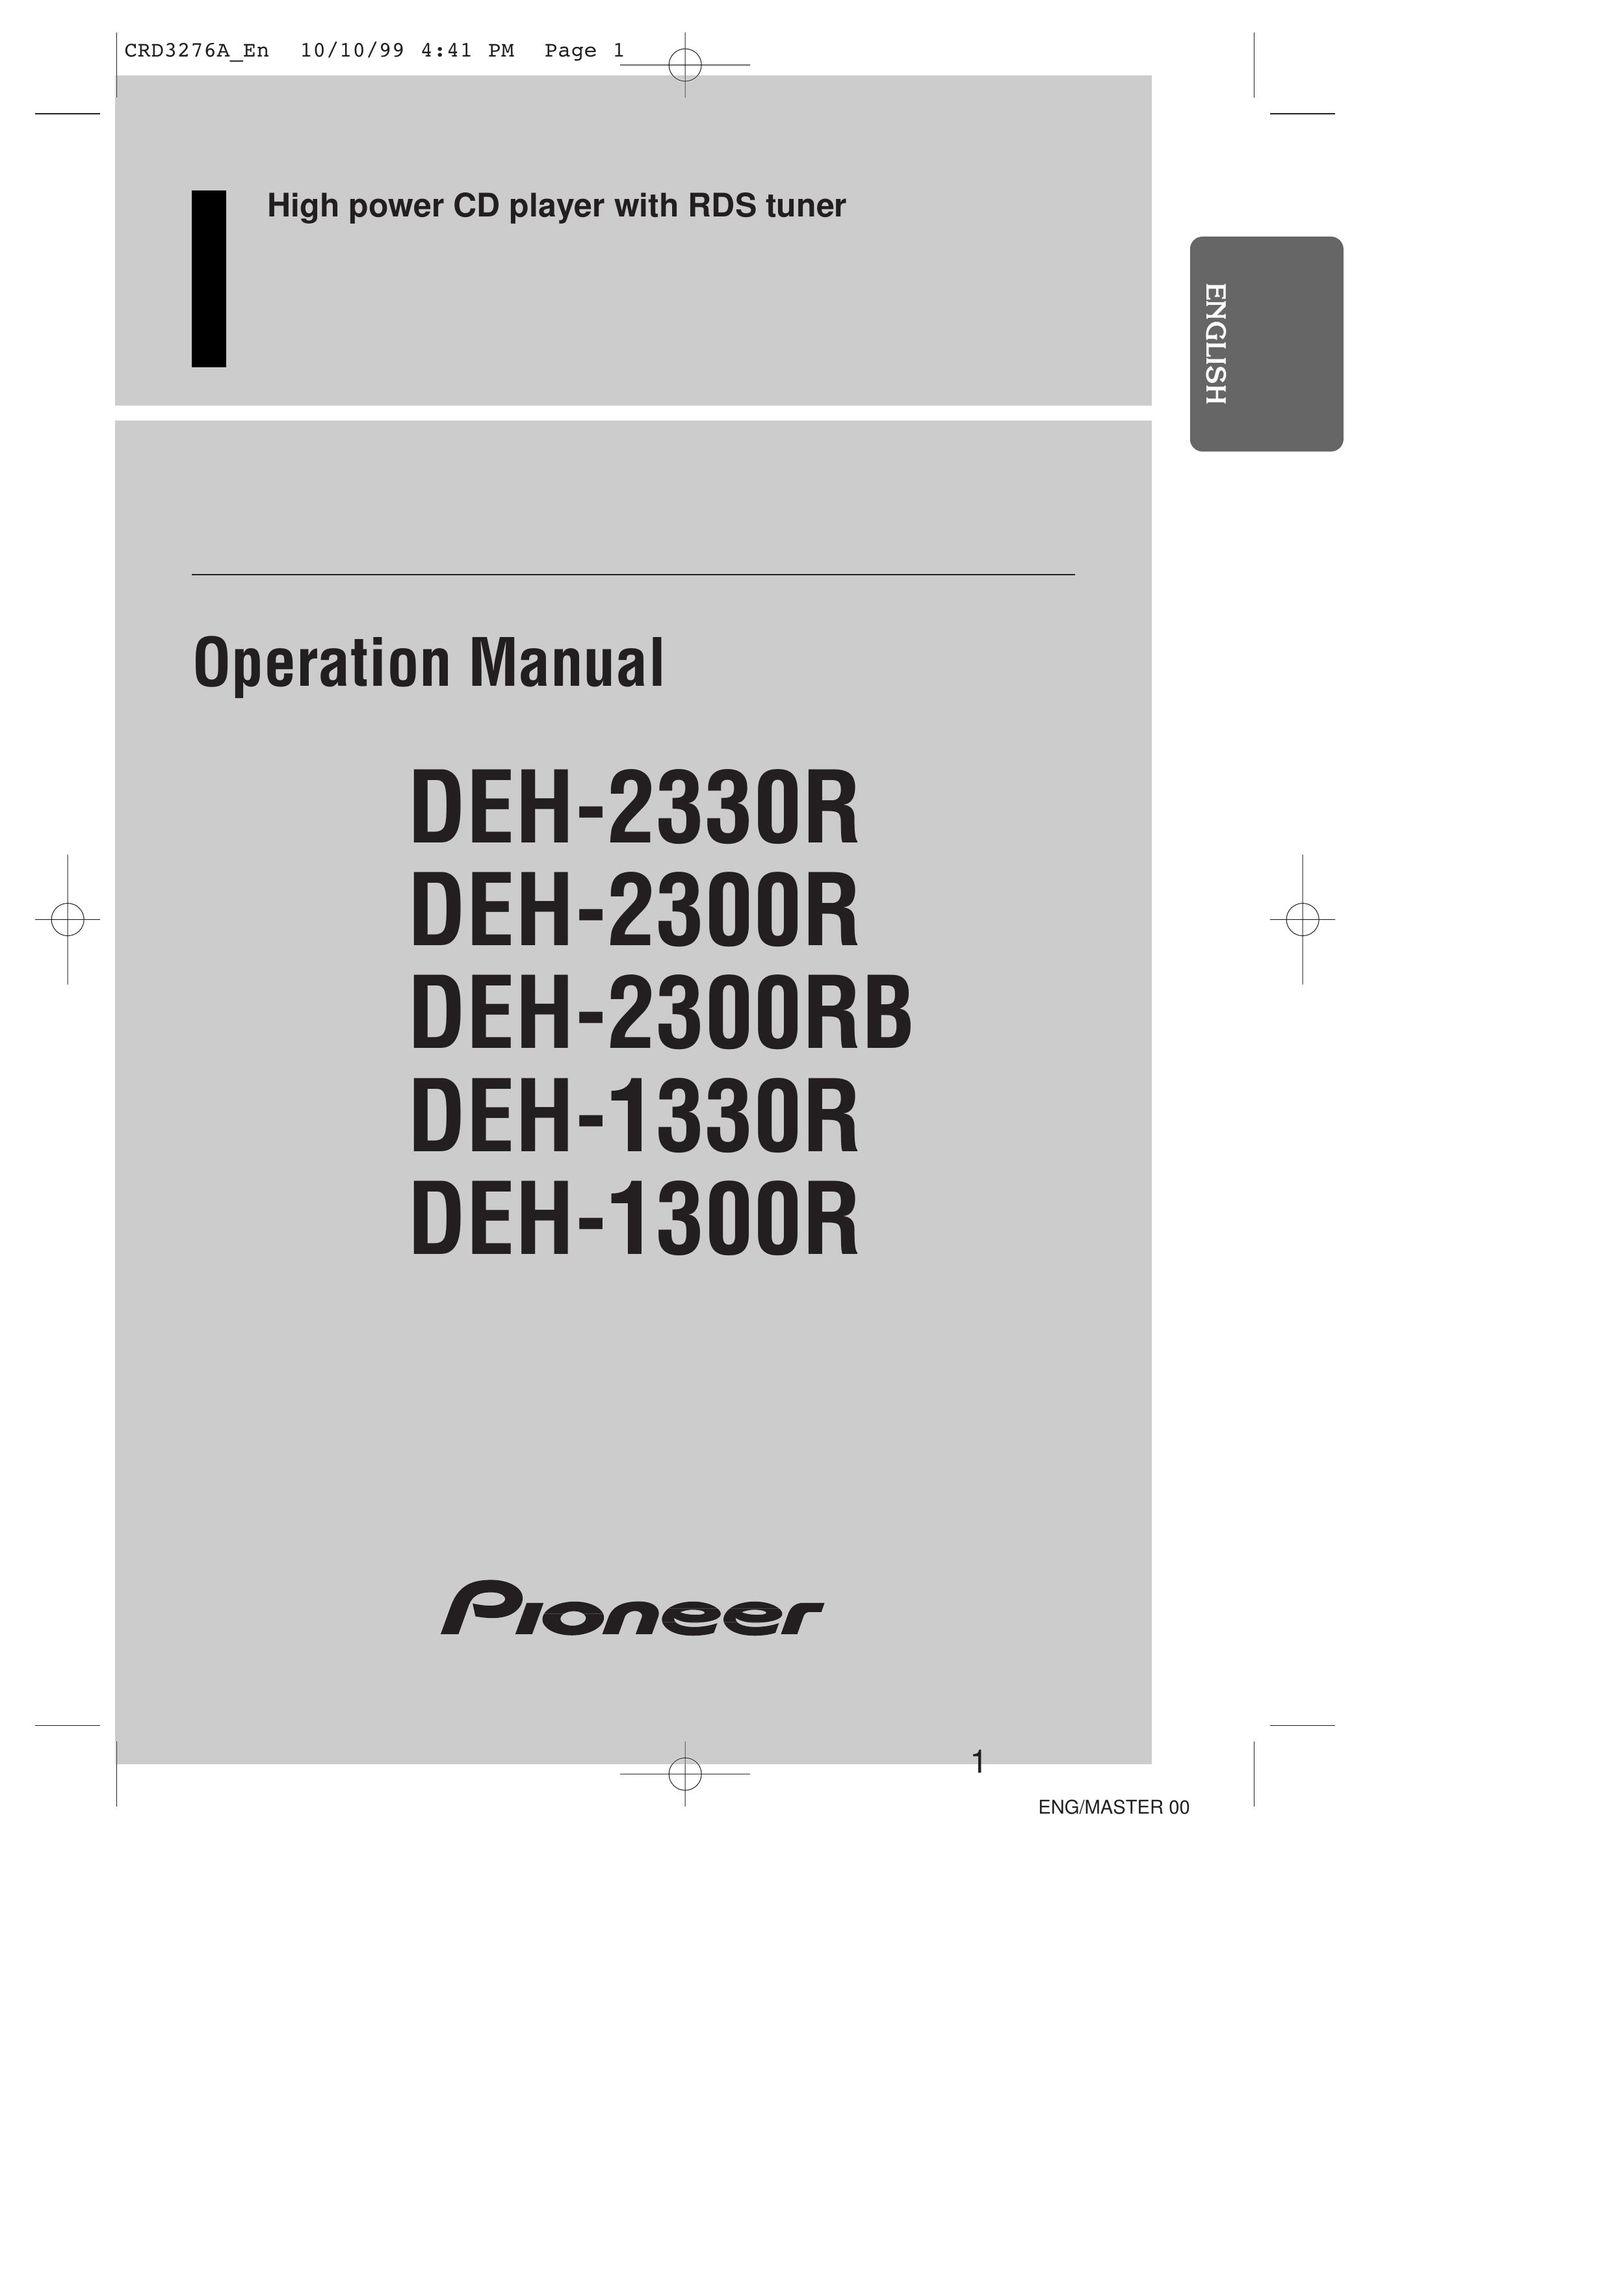 Pioneer DEH-1330R CD Player User Manual